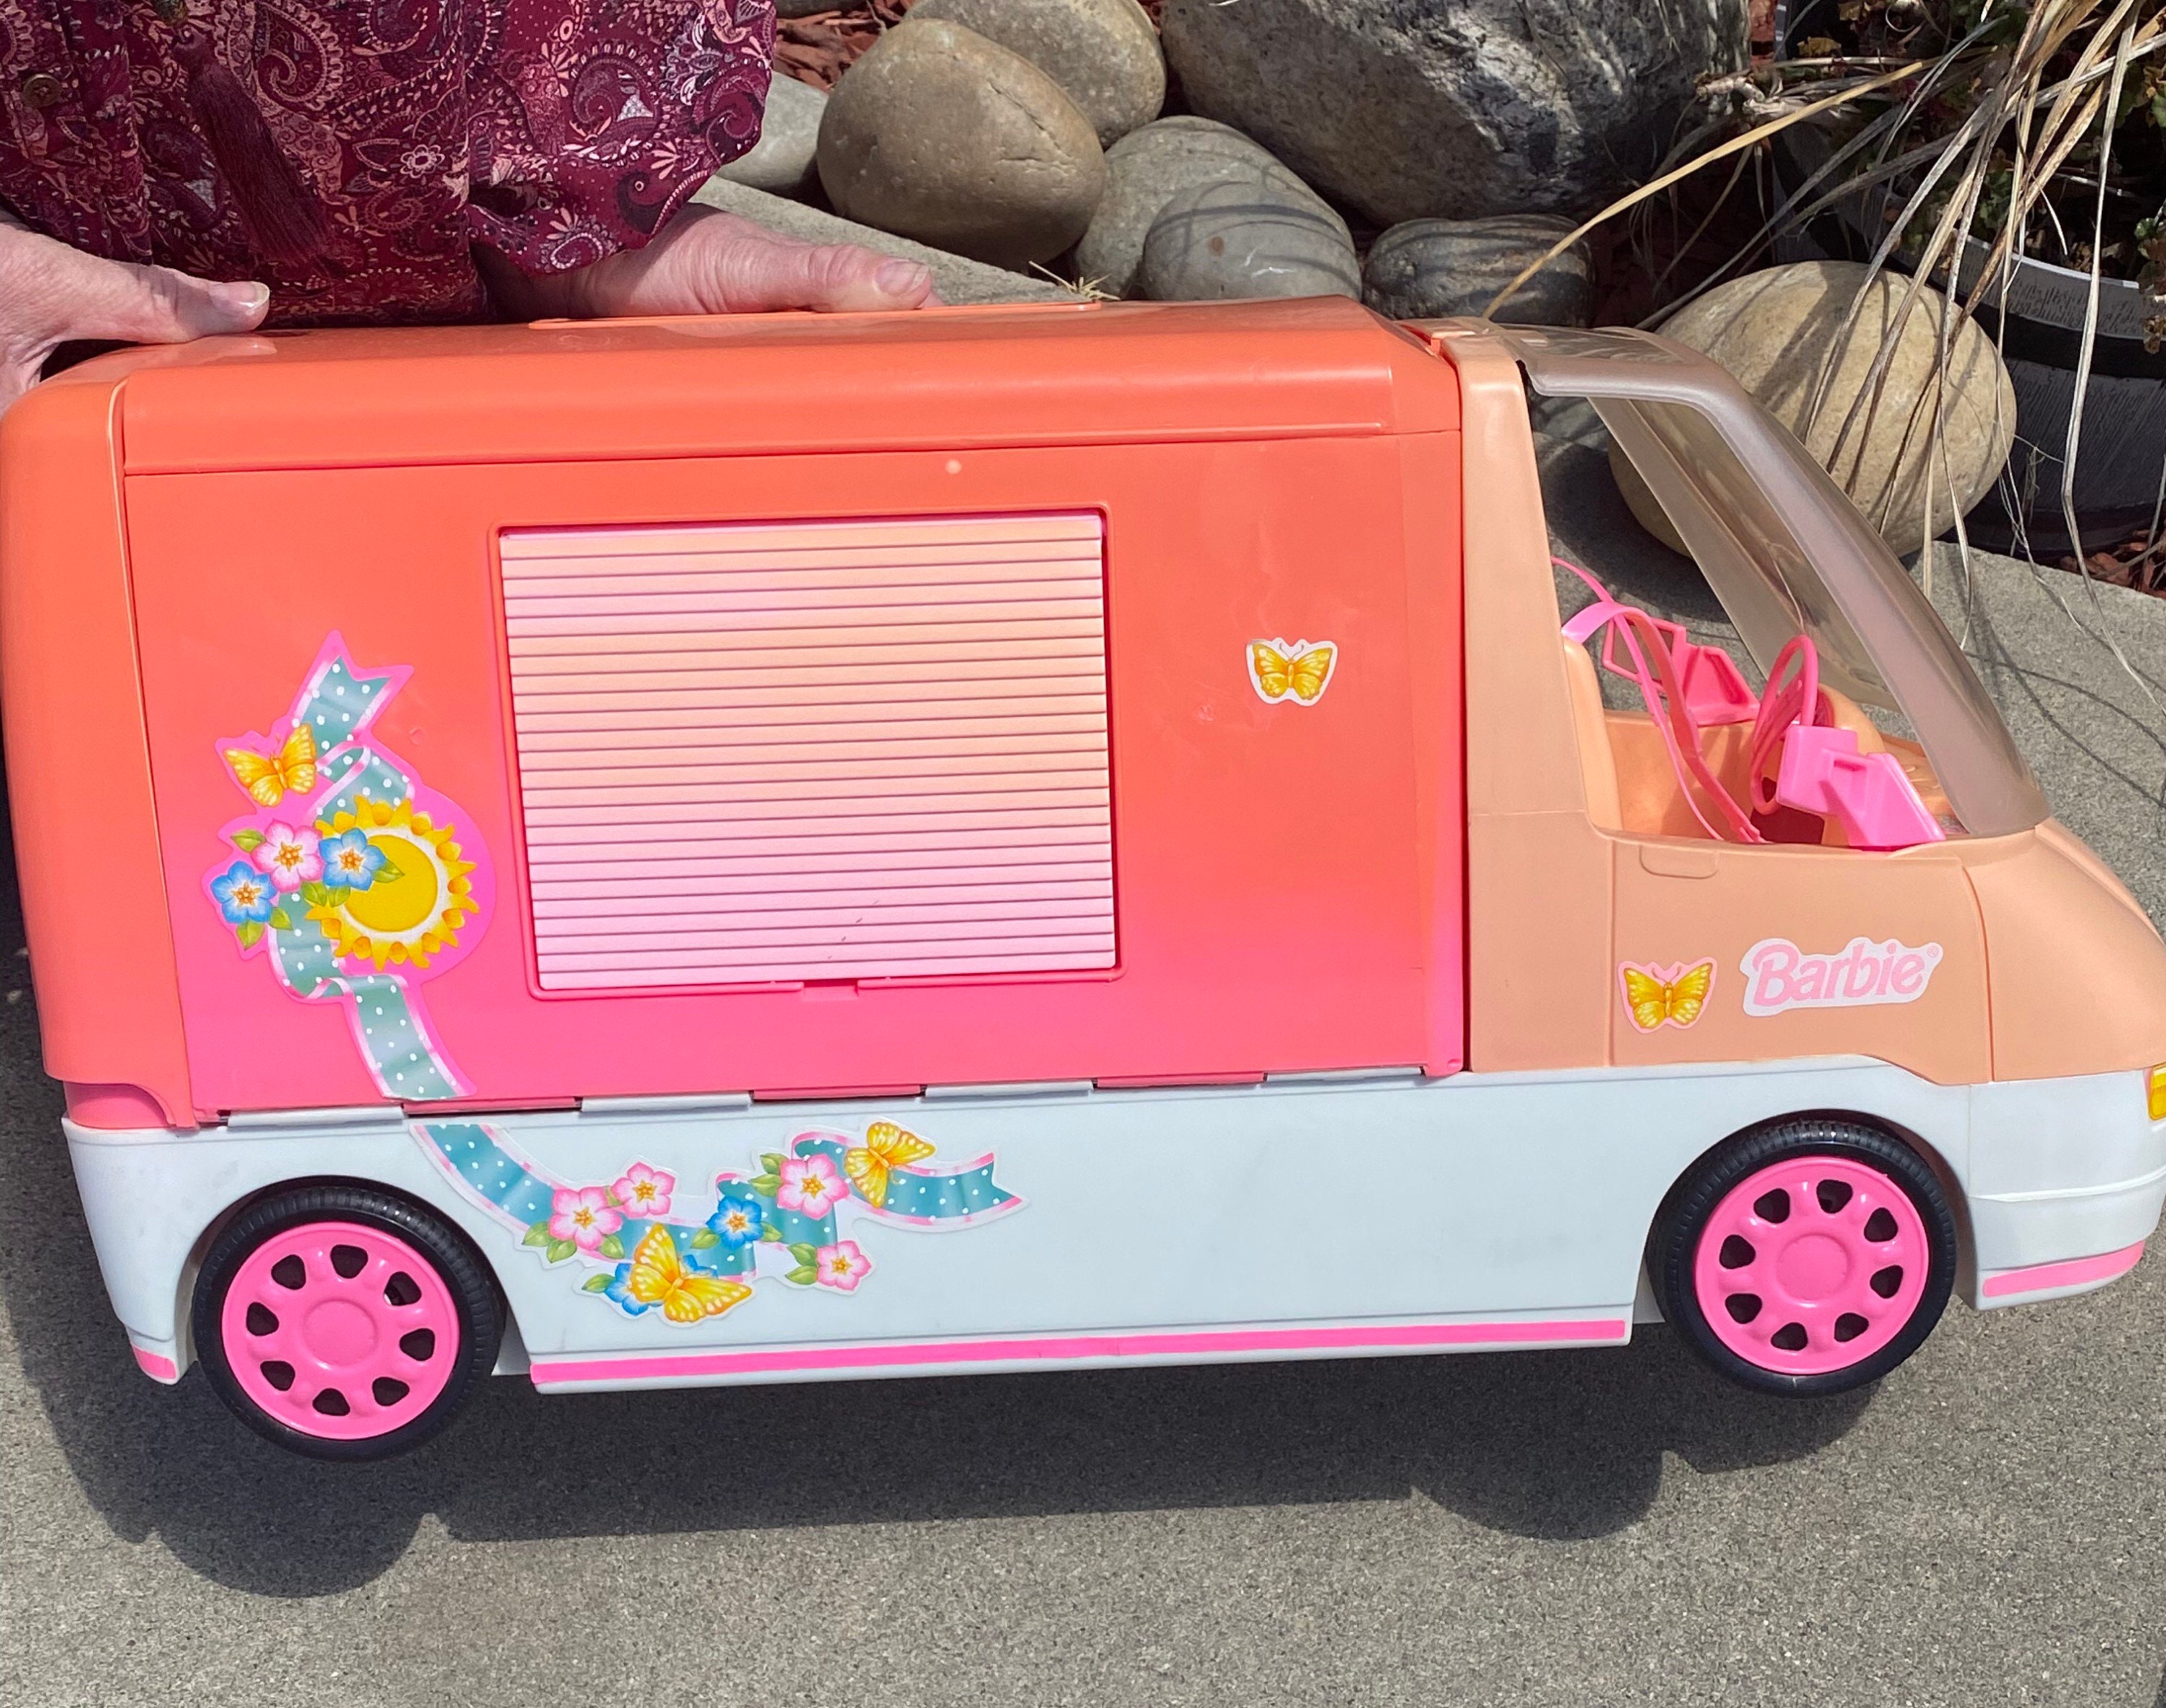 Vintage Mattel Barbie Motorhome Maxi Van Rv Camper Lupon Gov Ph